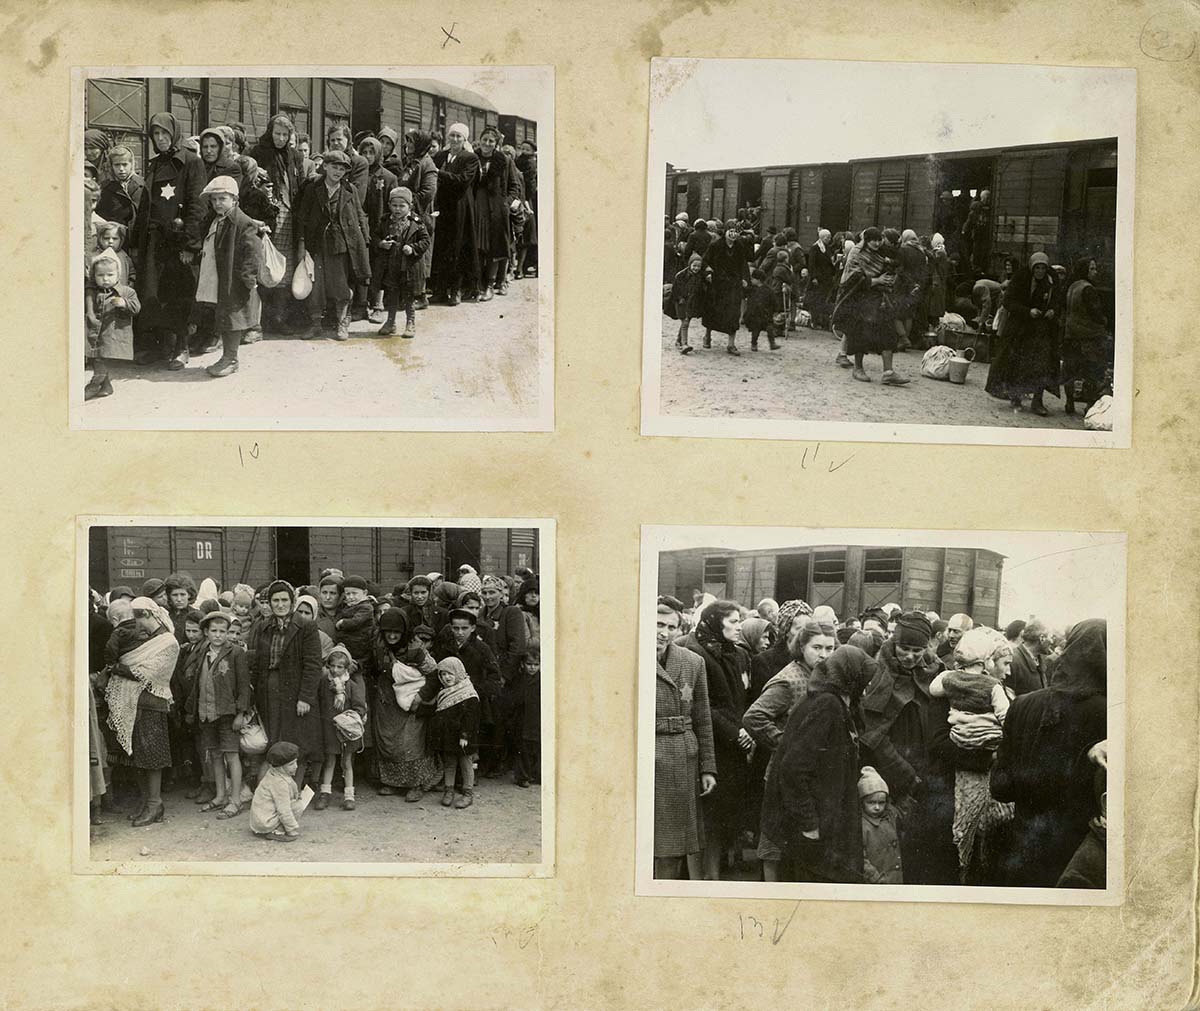 Mujeres y niños en la plataforma de llegada de Auschwitz conocida como la  "rampa". Los judíos eran sacados de los trenes de deportación a la rampa donde pasaban por un proceso de selección; algunos eran enviados de inmediato a su muerte y otros a trabajos forzados